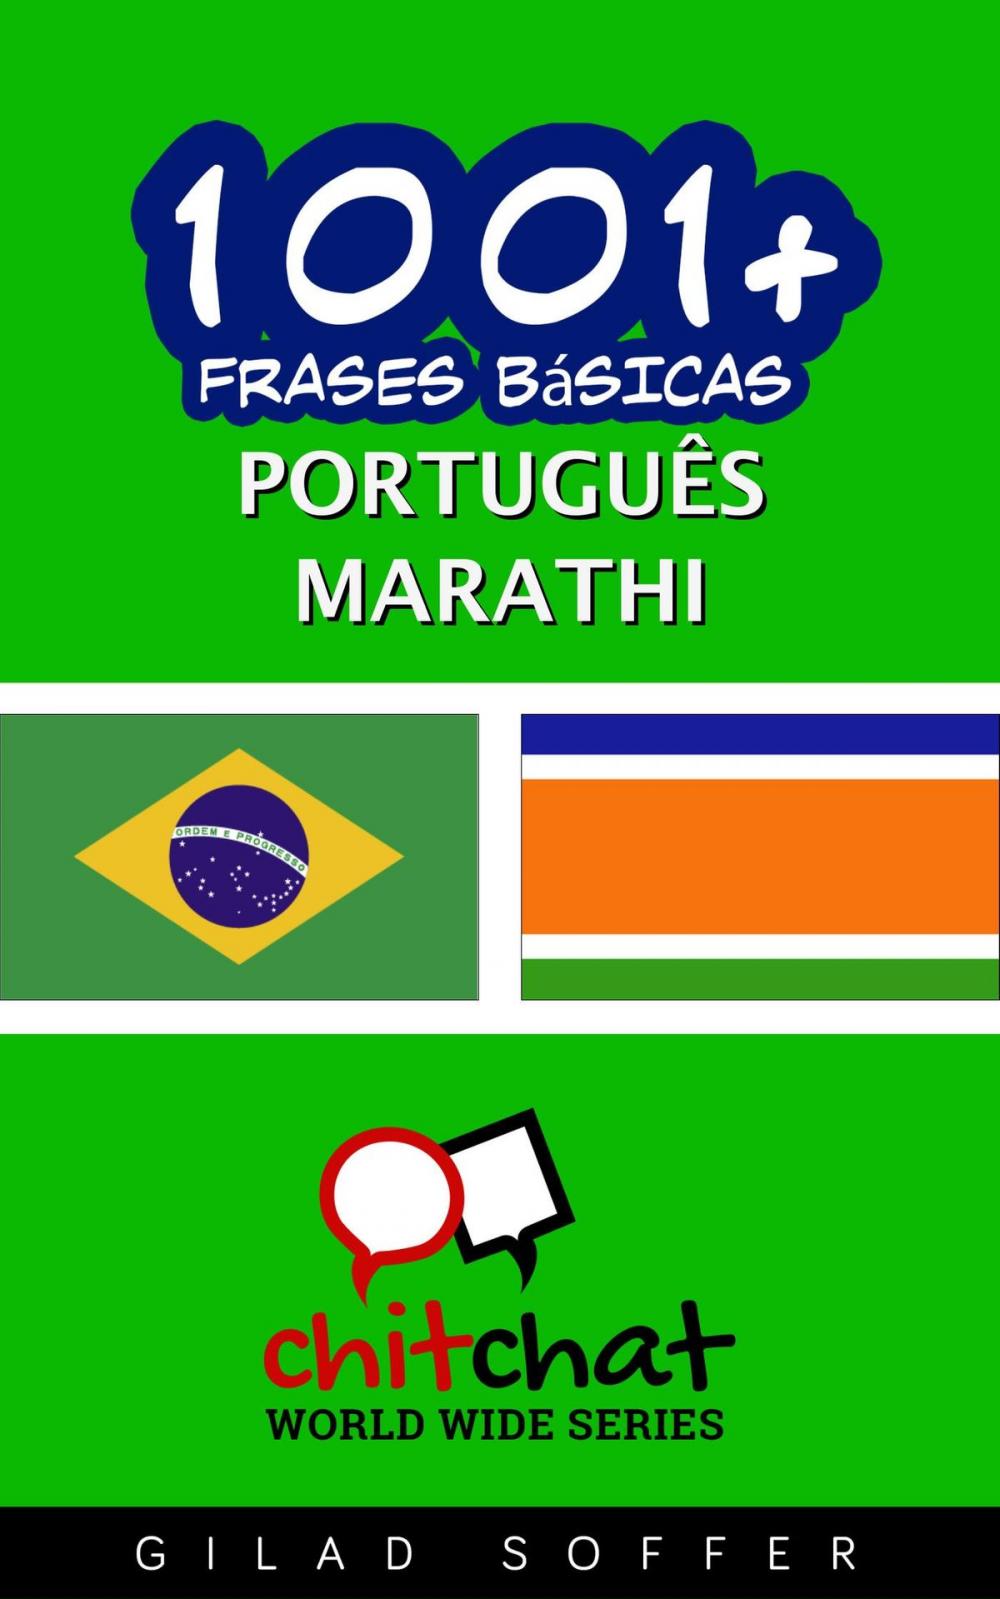 Big bigCover of 1001+ Frases Básicas Português - Marathi